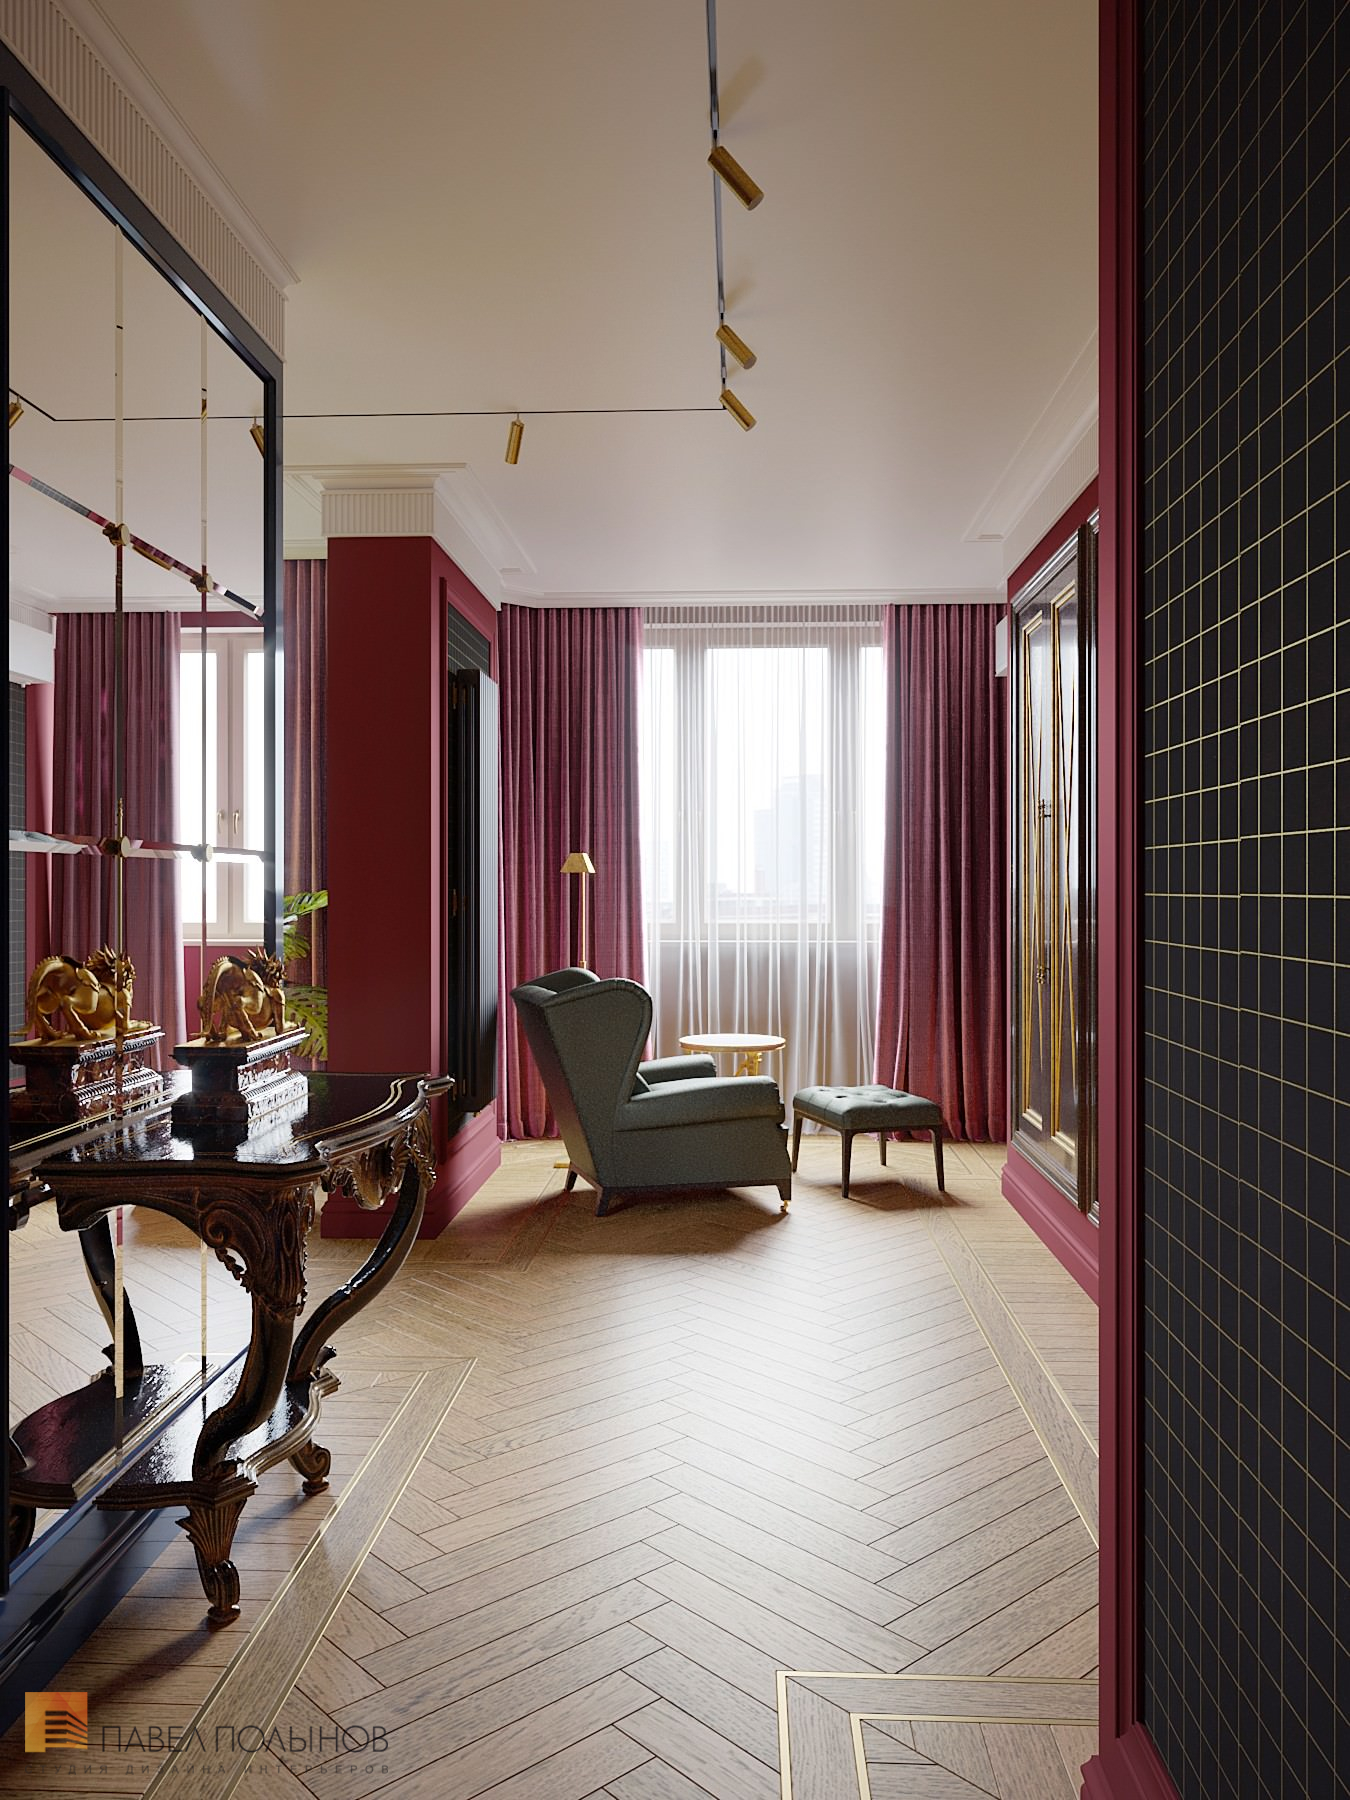 Фото дизайн интерьера спальни из проекта «Интерьер квартиры в стиле английской классики, ЖК «Патриот», 124 кв.м.»